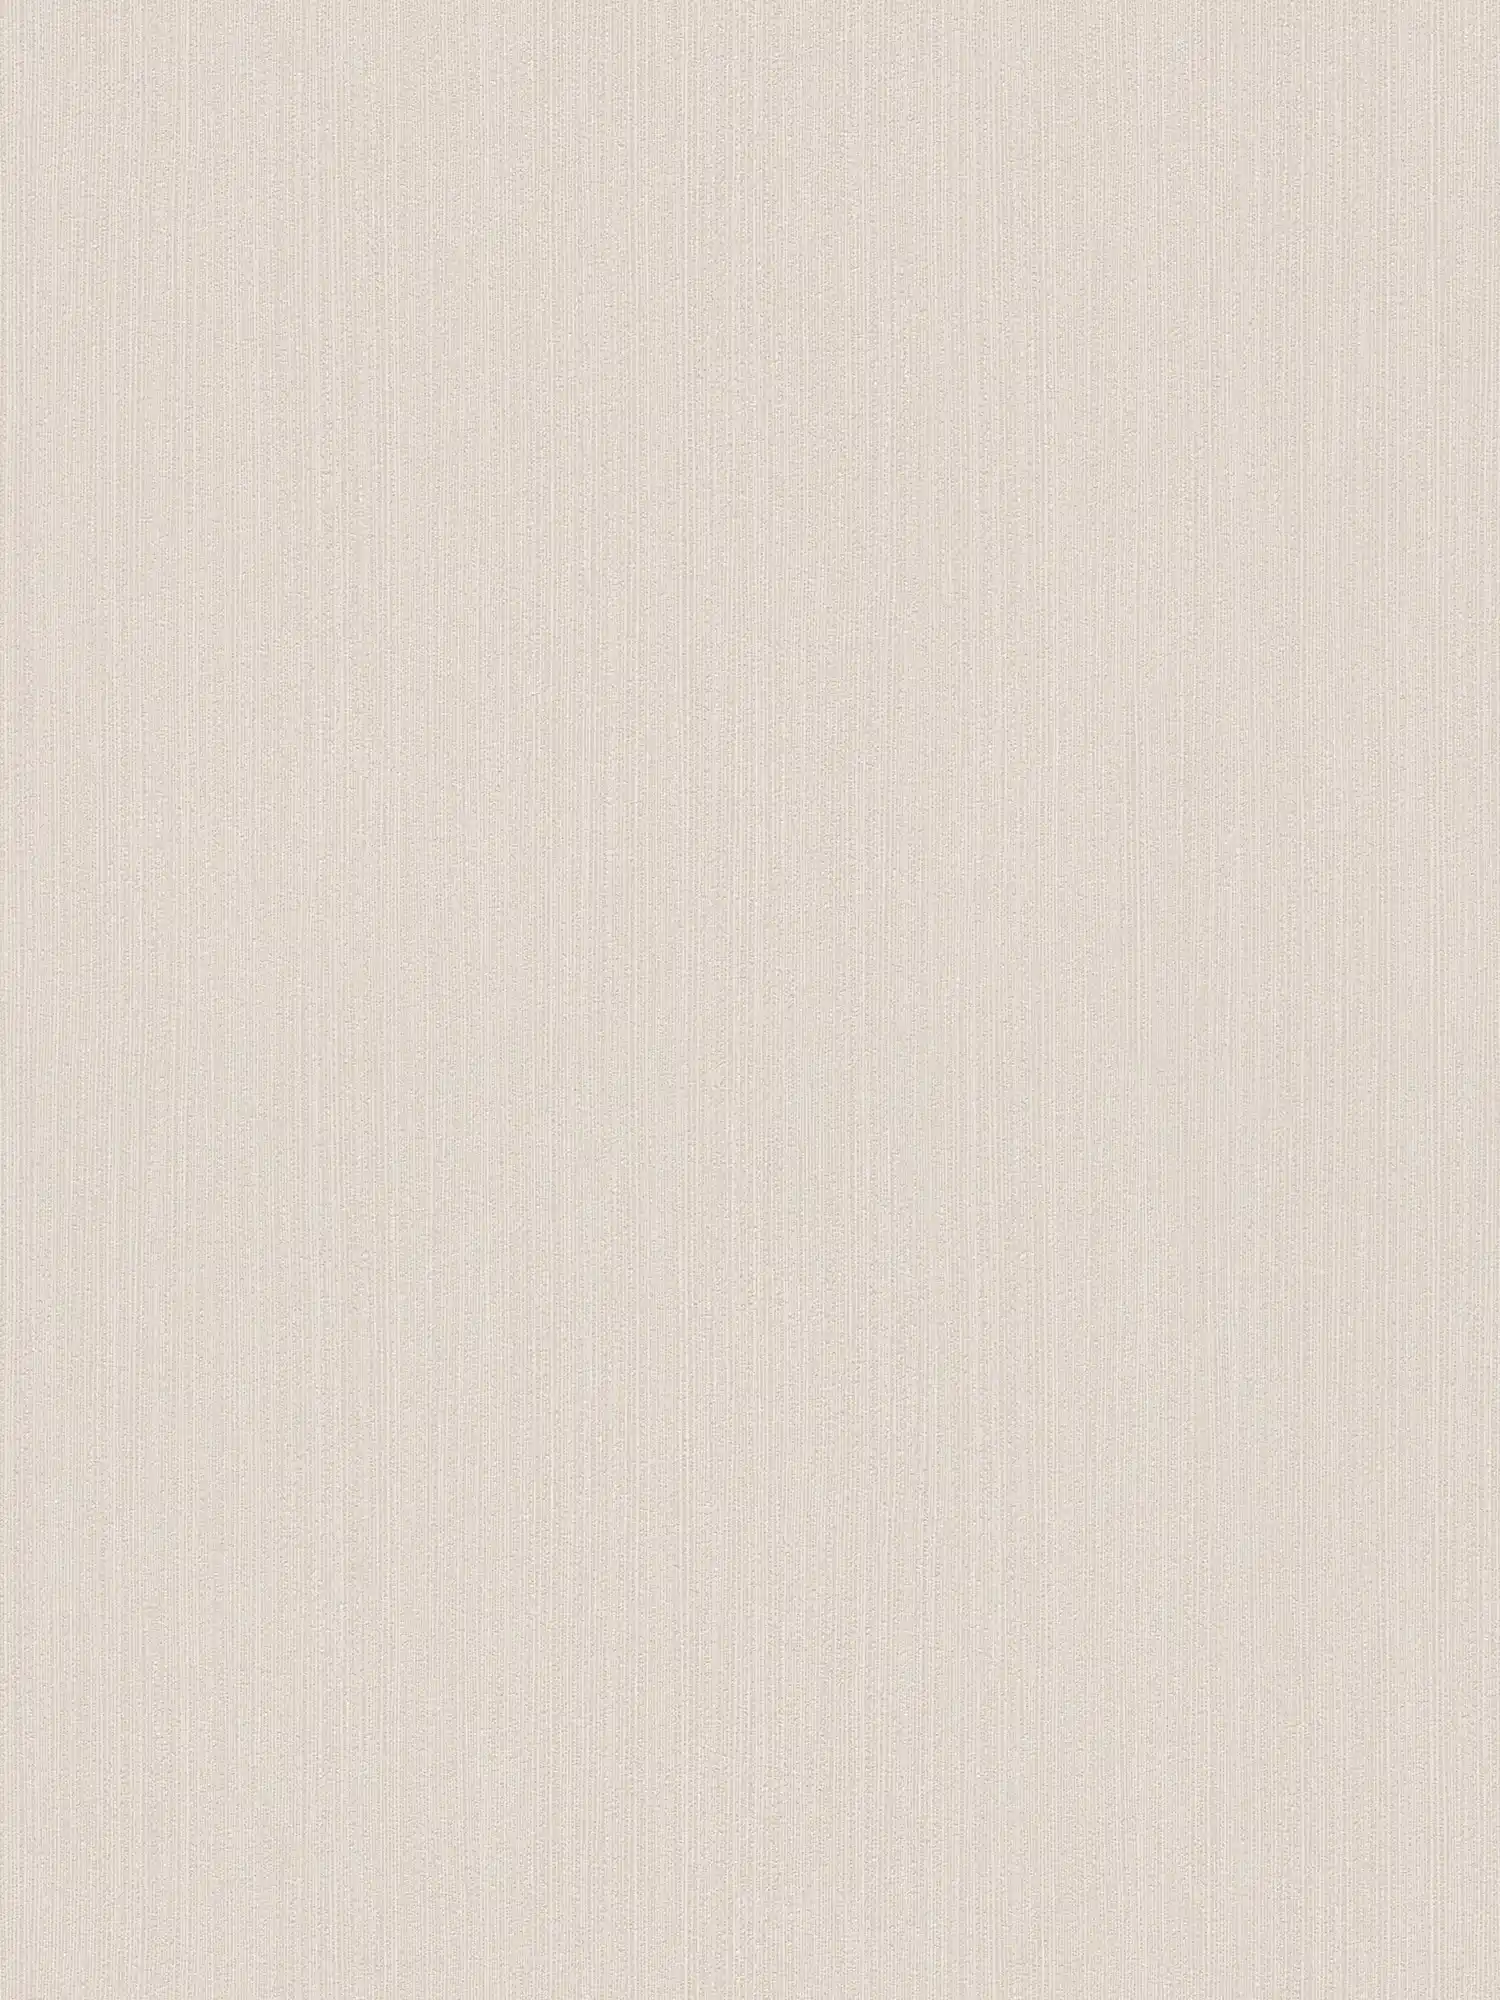 Cream beige non-woven wallpaper with subtle hatching - beige
